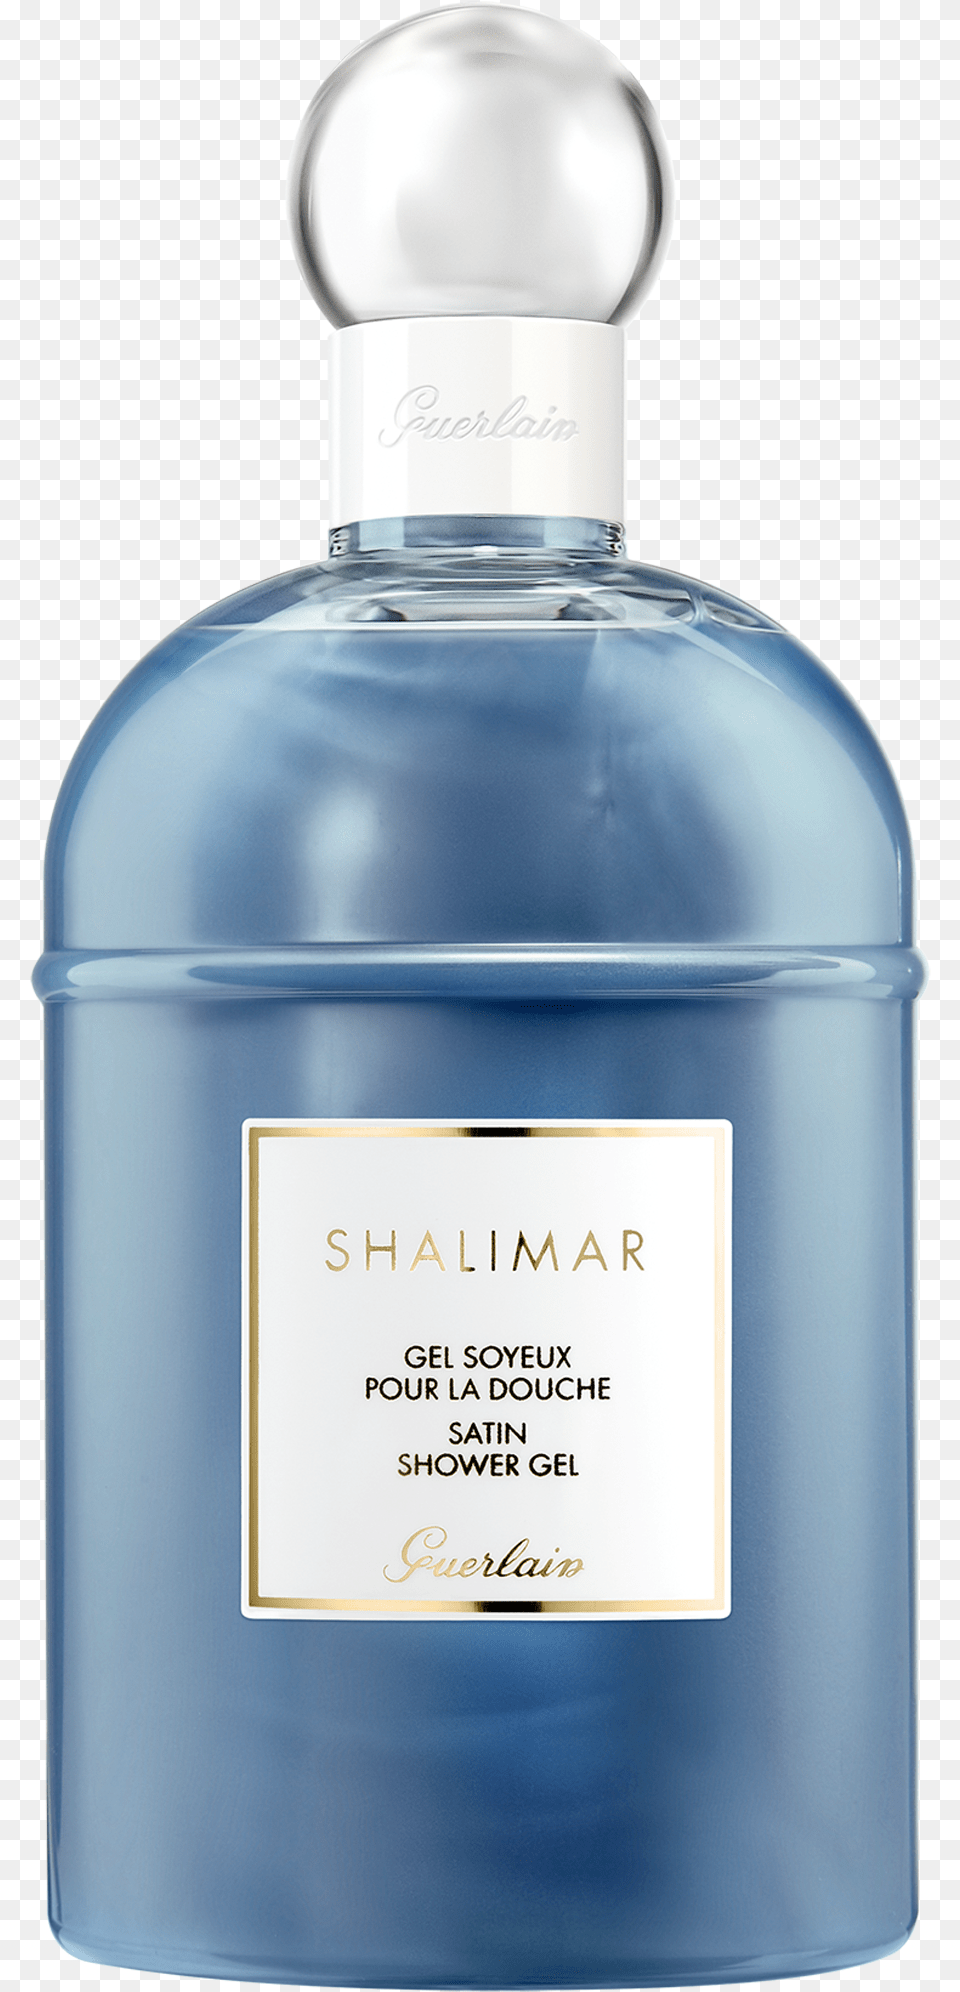 Shalimar Gel Douche Guerlain Shalimar Satin Shower Gel Barcode, Bottle, Cosmetics, Perfume, Aftershave Png